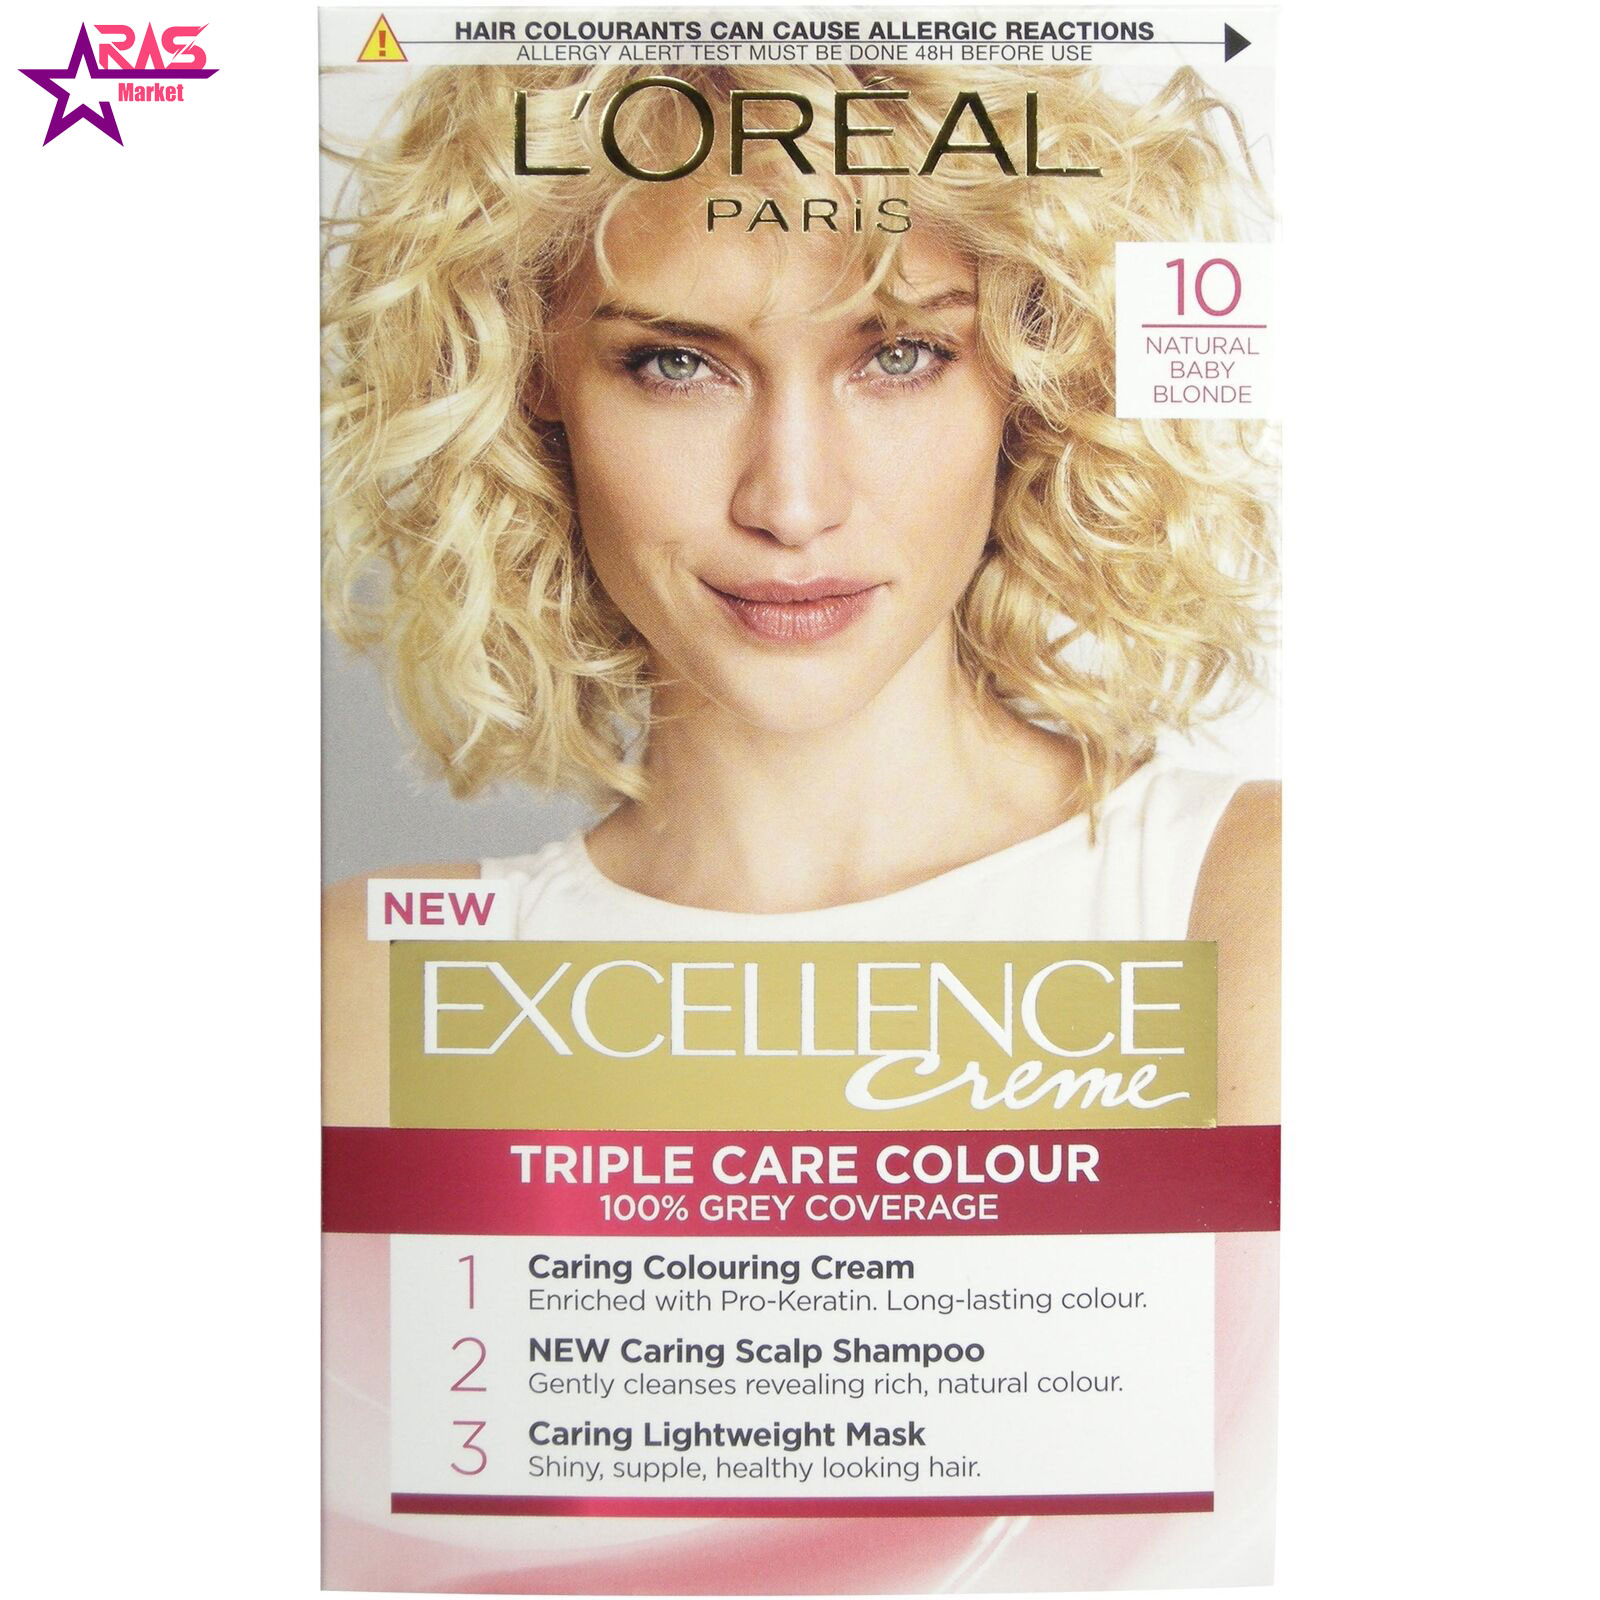 کیت رنگ مو لورآل سری Excellence شماره 10 ، فروشگاه اینترنتی ارس مارکت ، بهداشت بانوان ، loreal hair dye